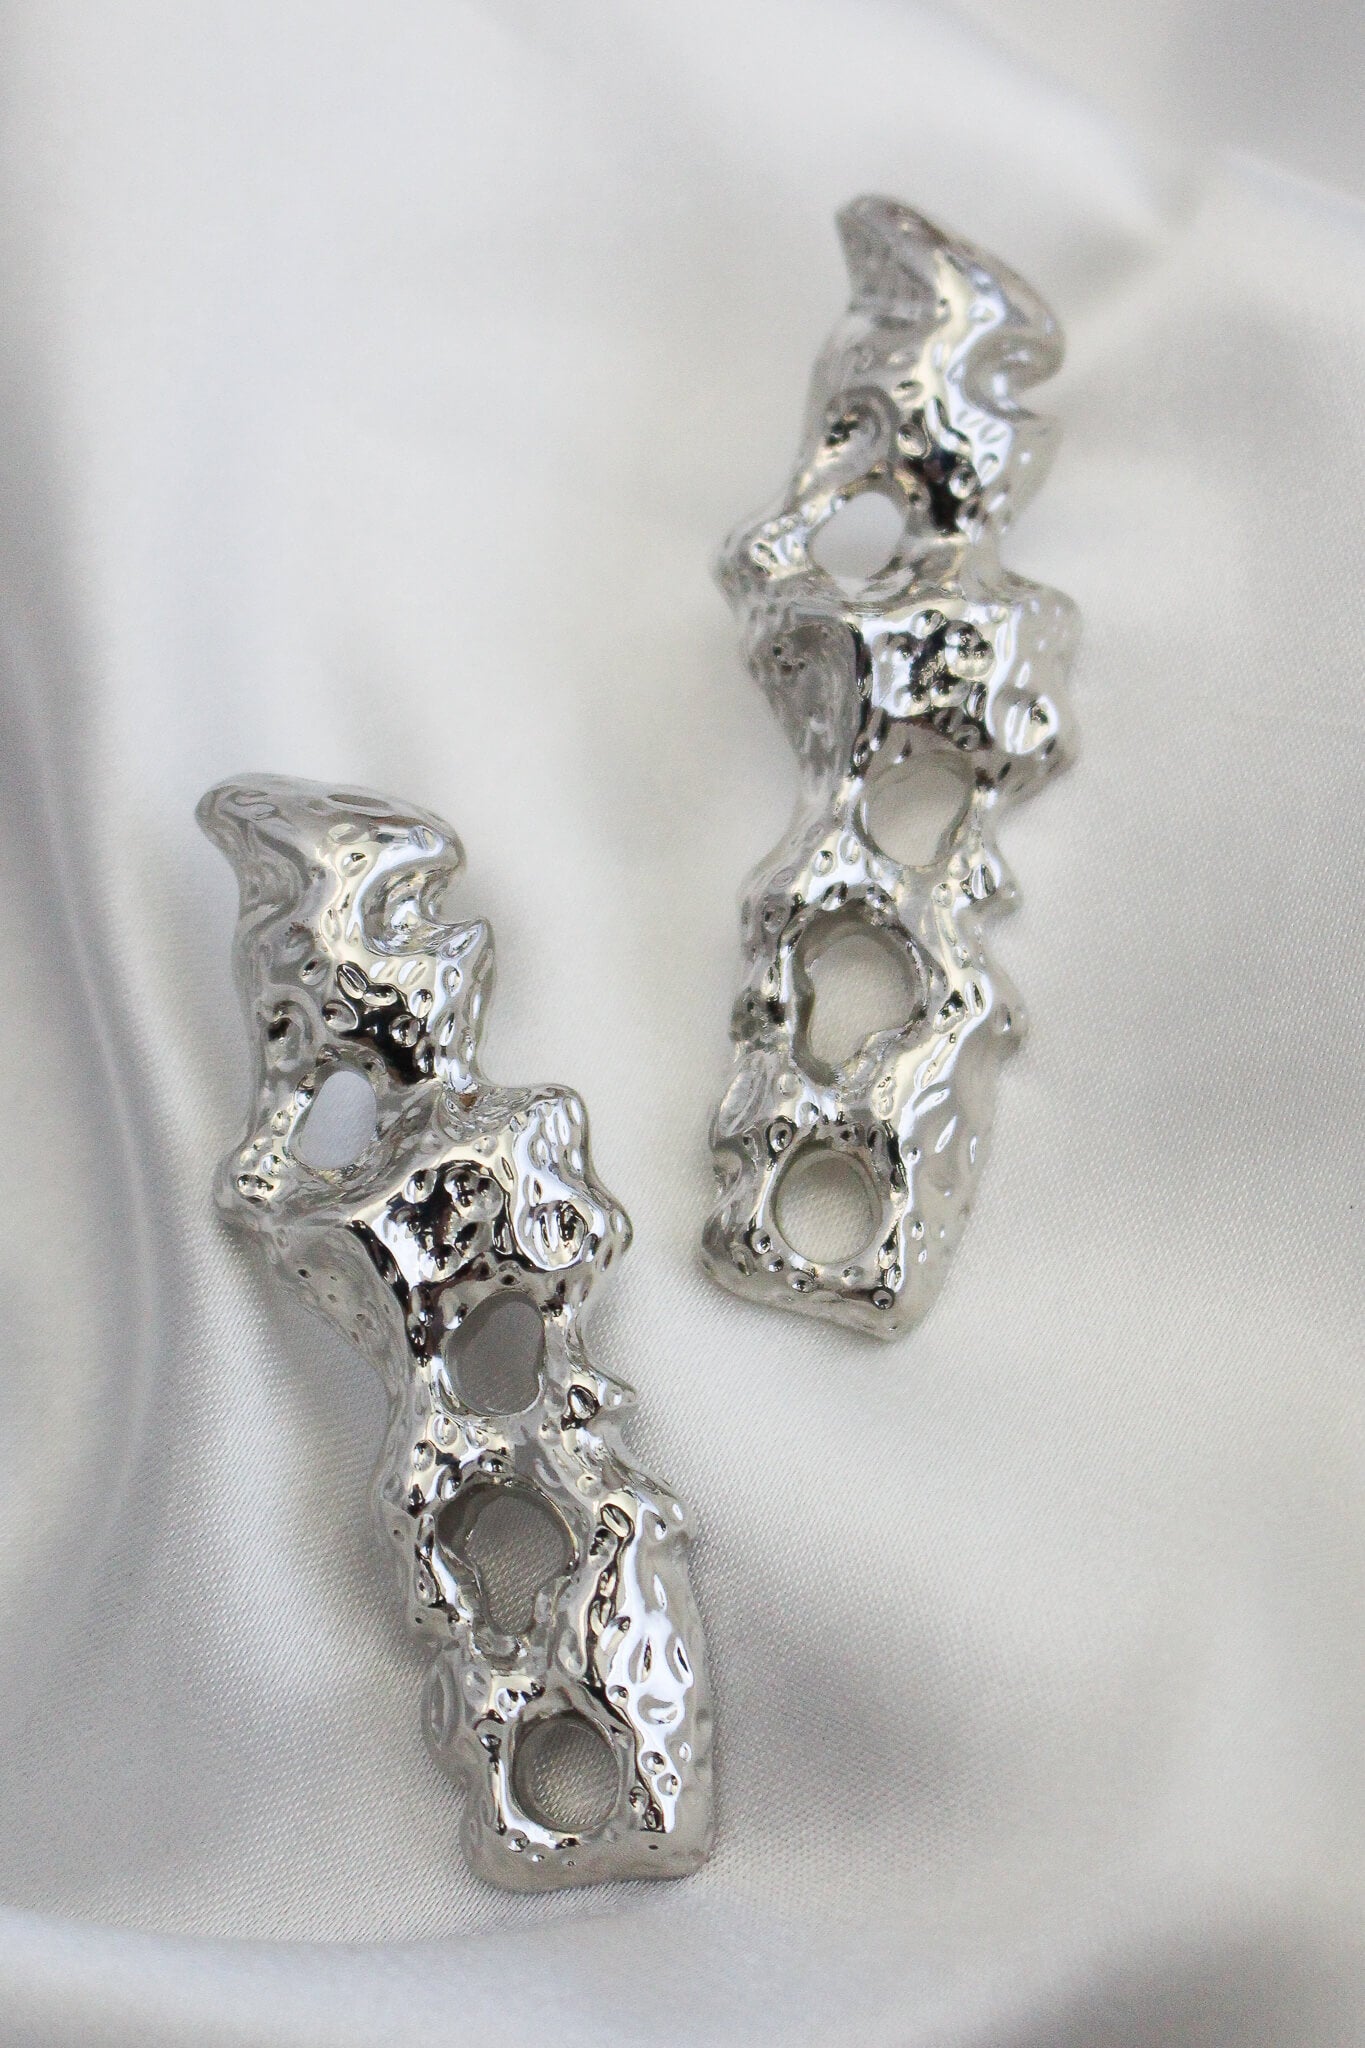 Silver odd shaped stud earrings